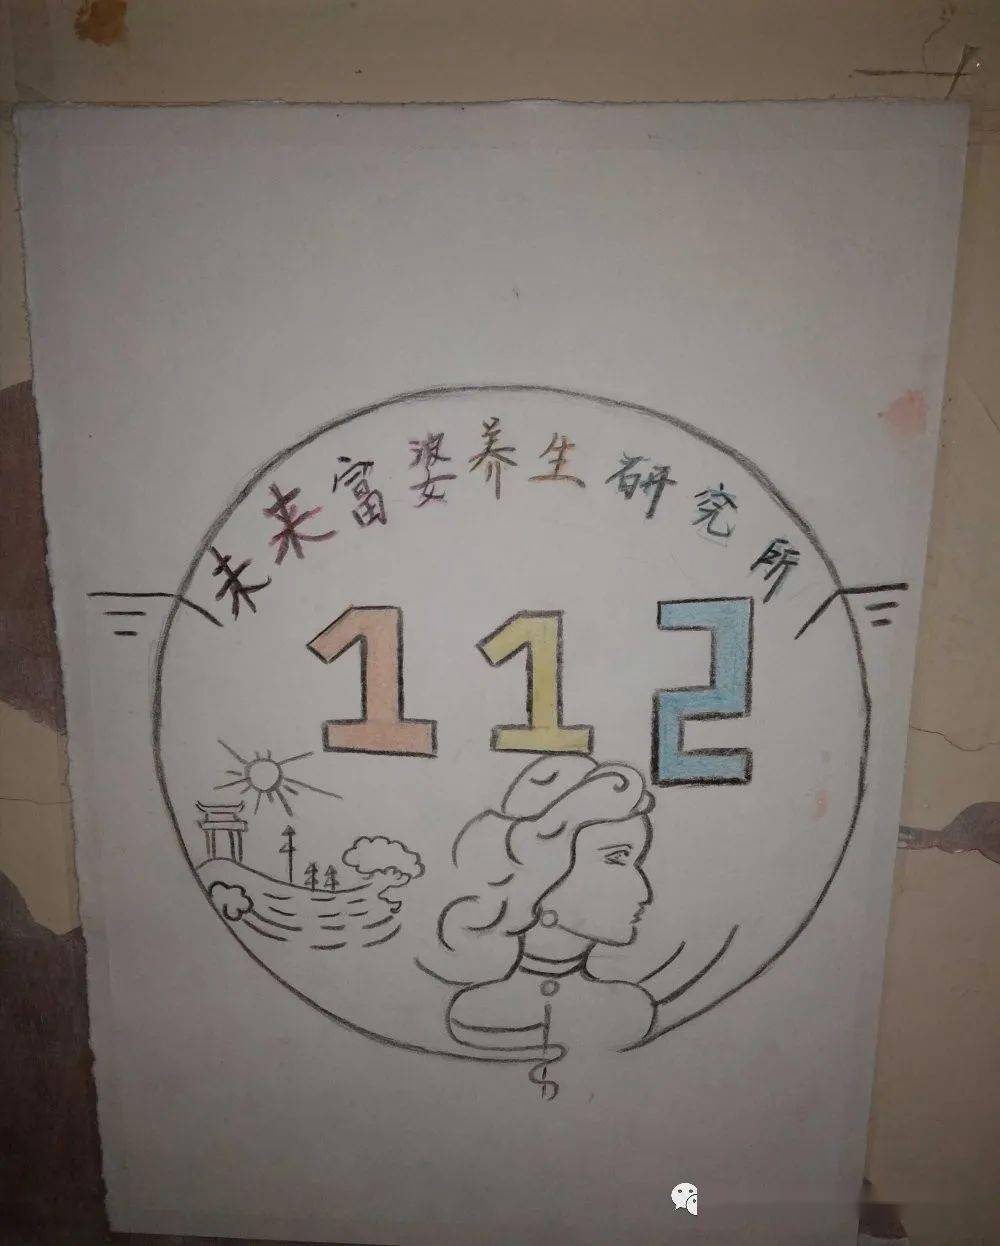 【团学活动】我系20级宿舍logo创意展示(二)